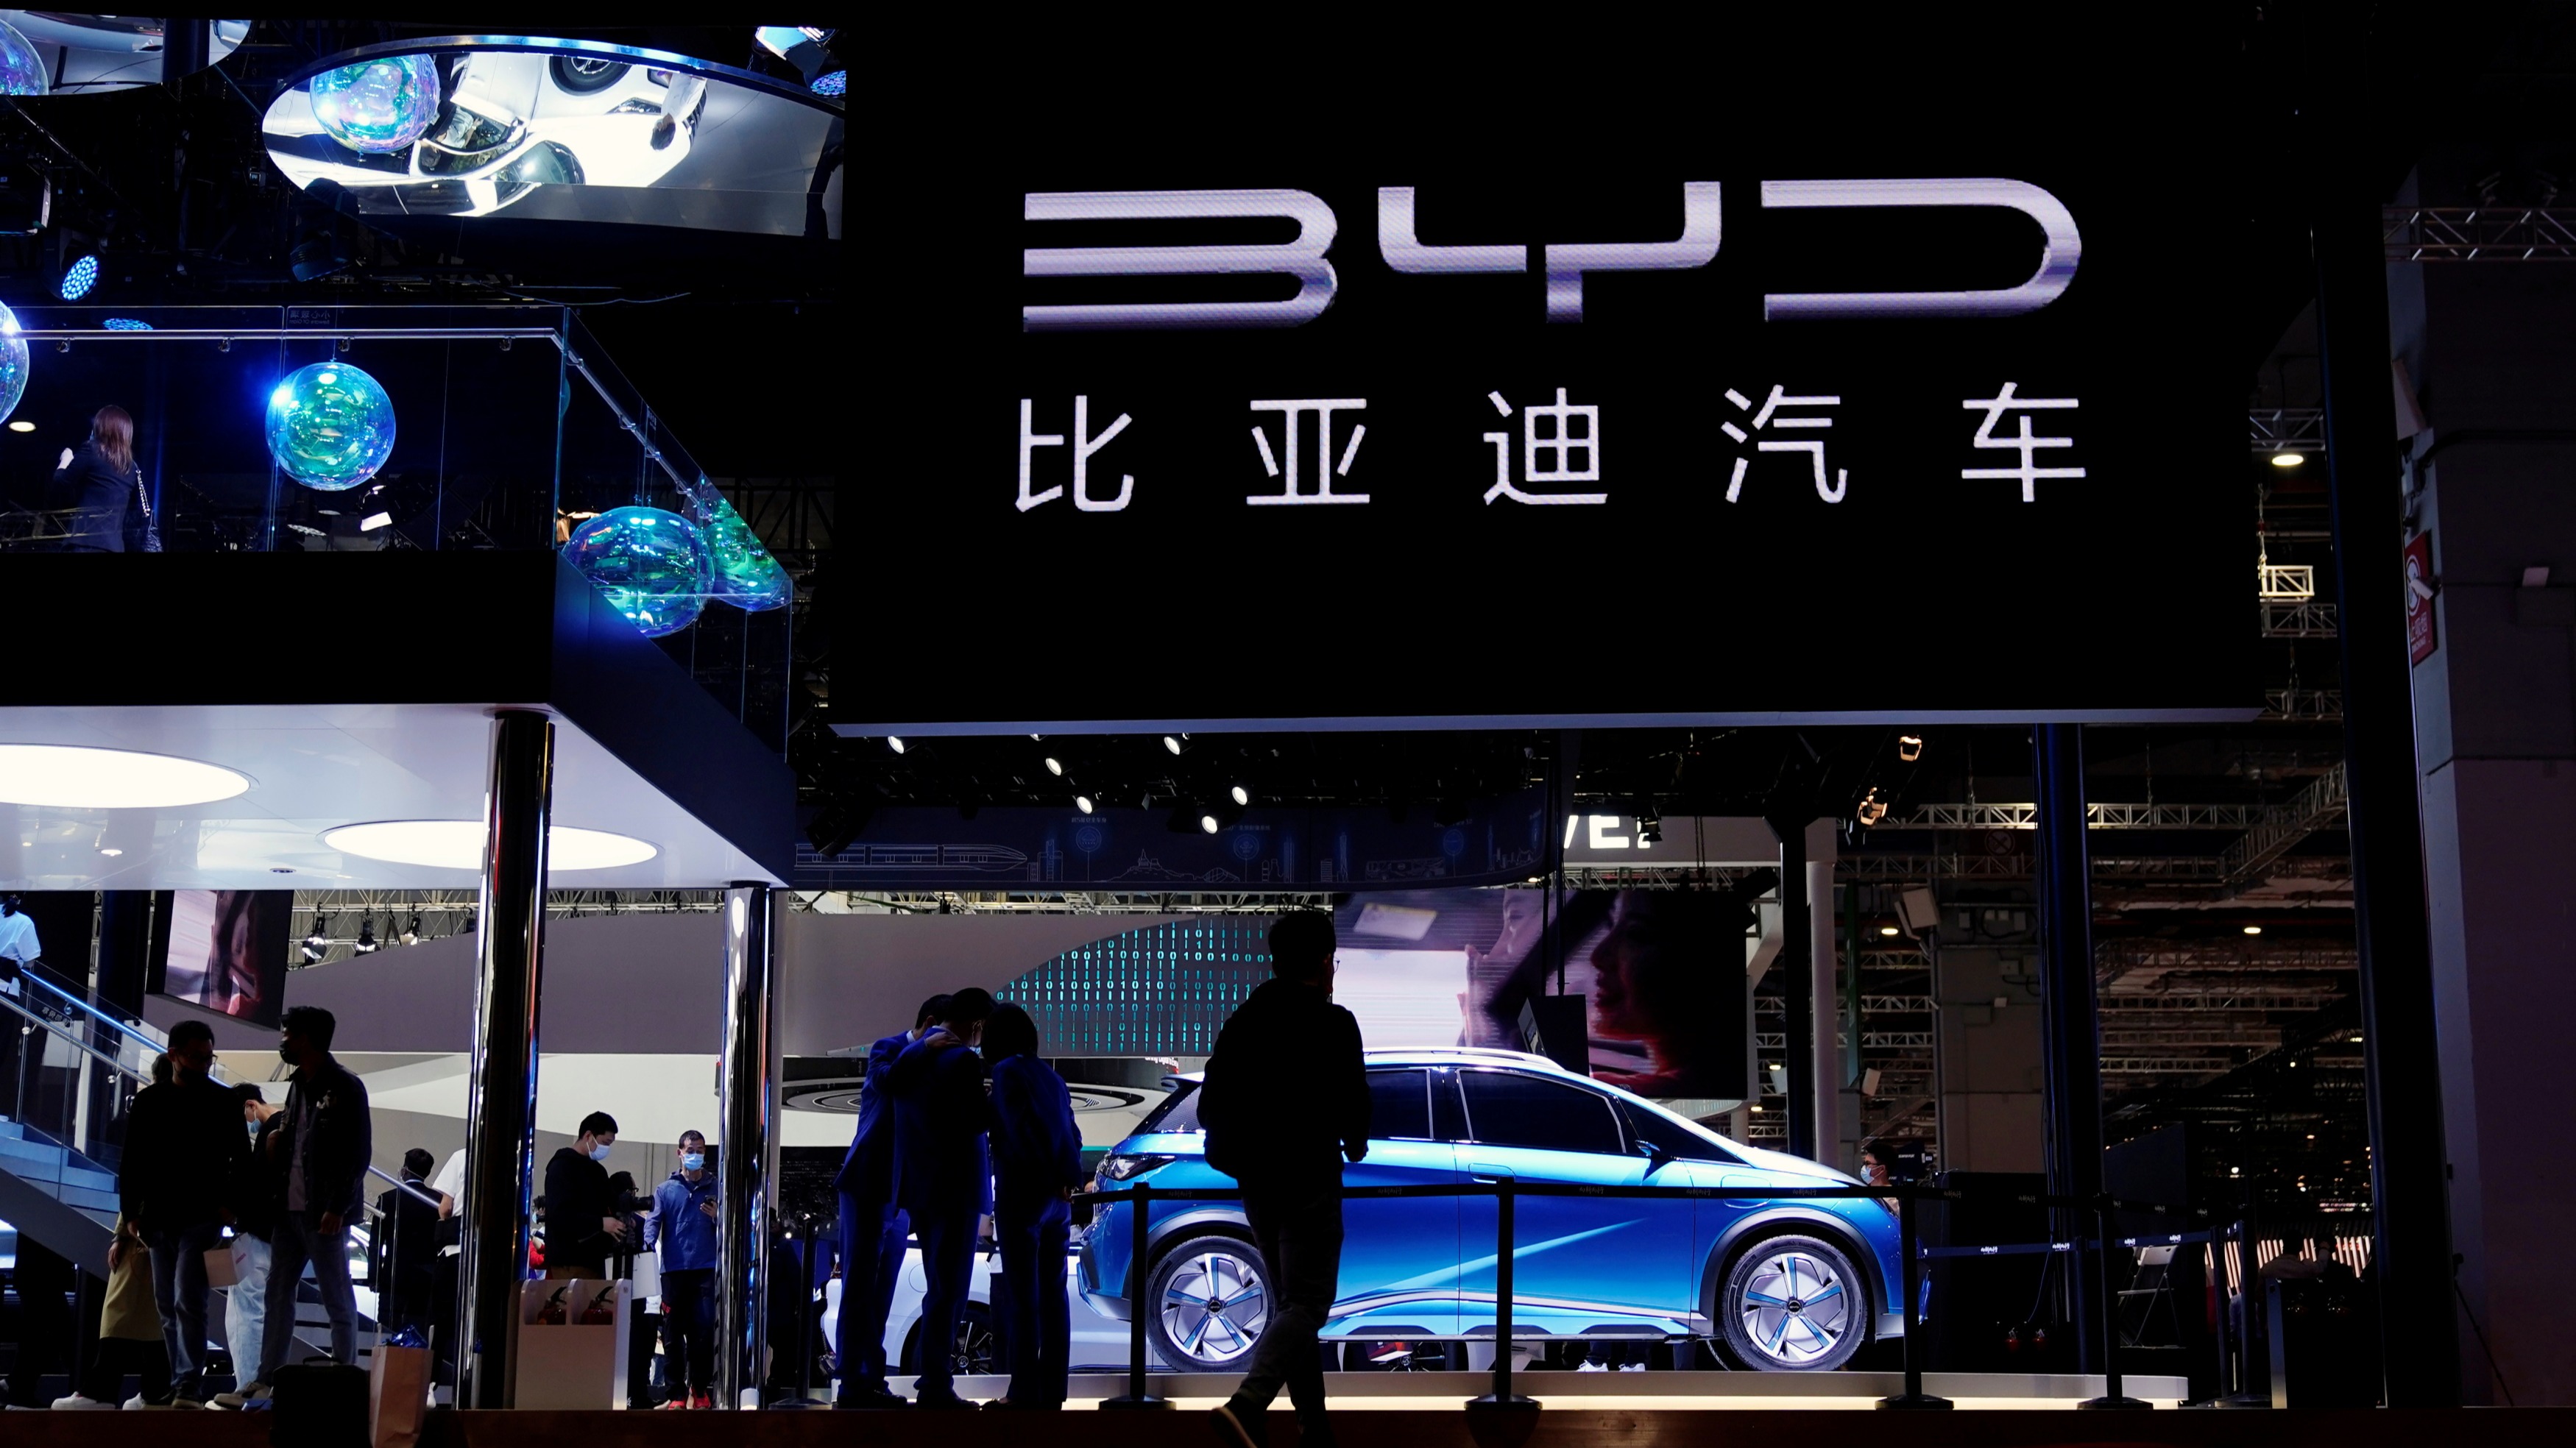 比亚迪挤下 Volkswagen 首度晋升全球汽车企业市值三甲